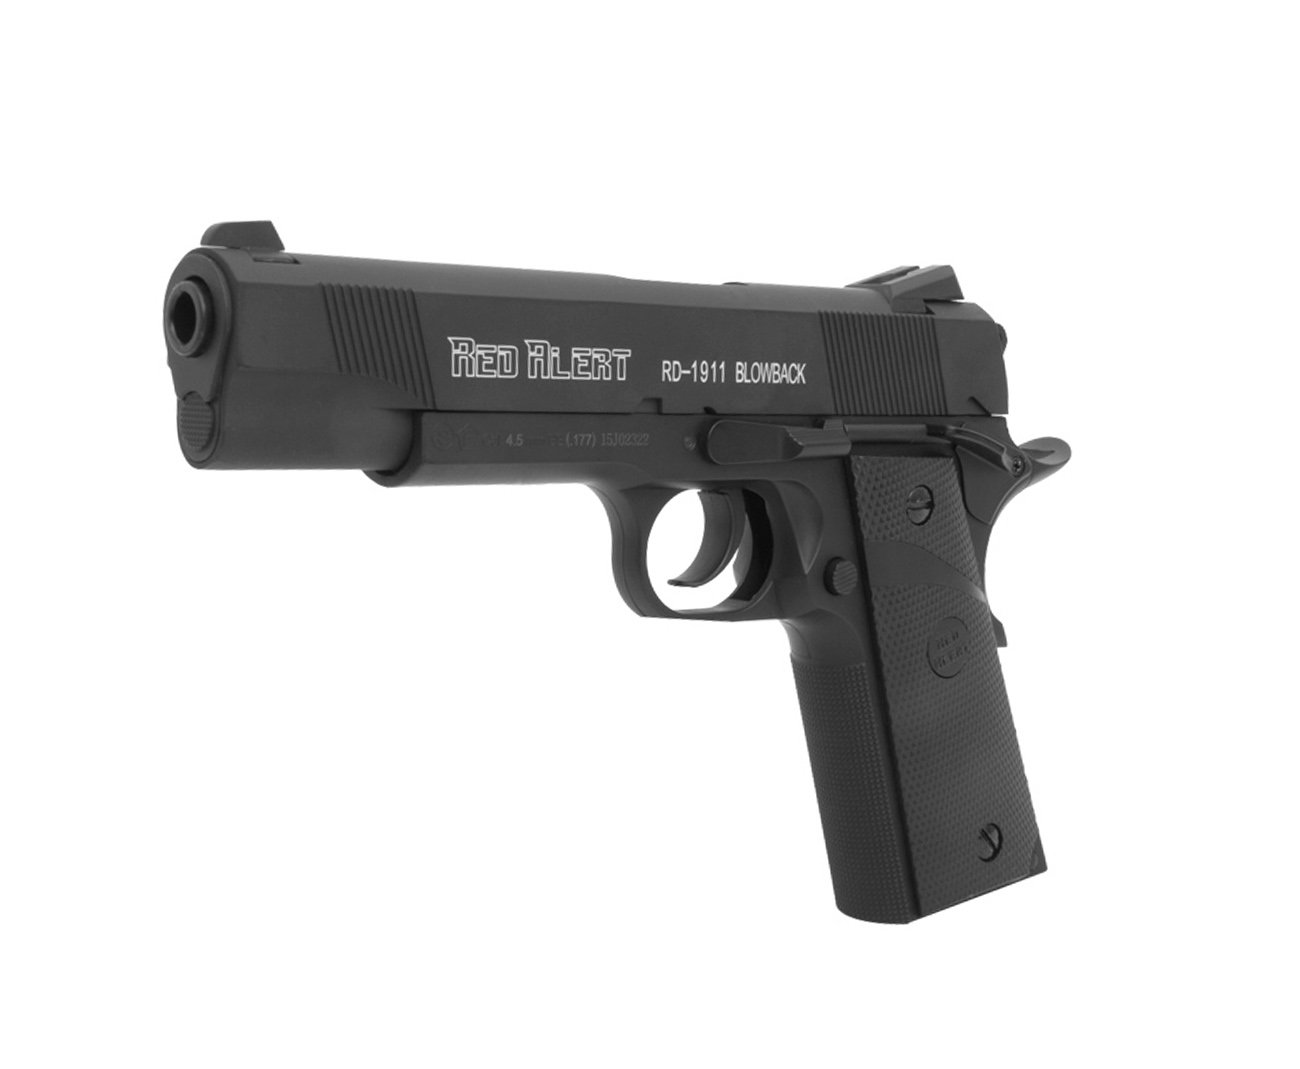 Pistola De Pressão A Gás Co2 Rd-1911 Blowback 4.5mm - Red Alert | Gamo